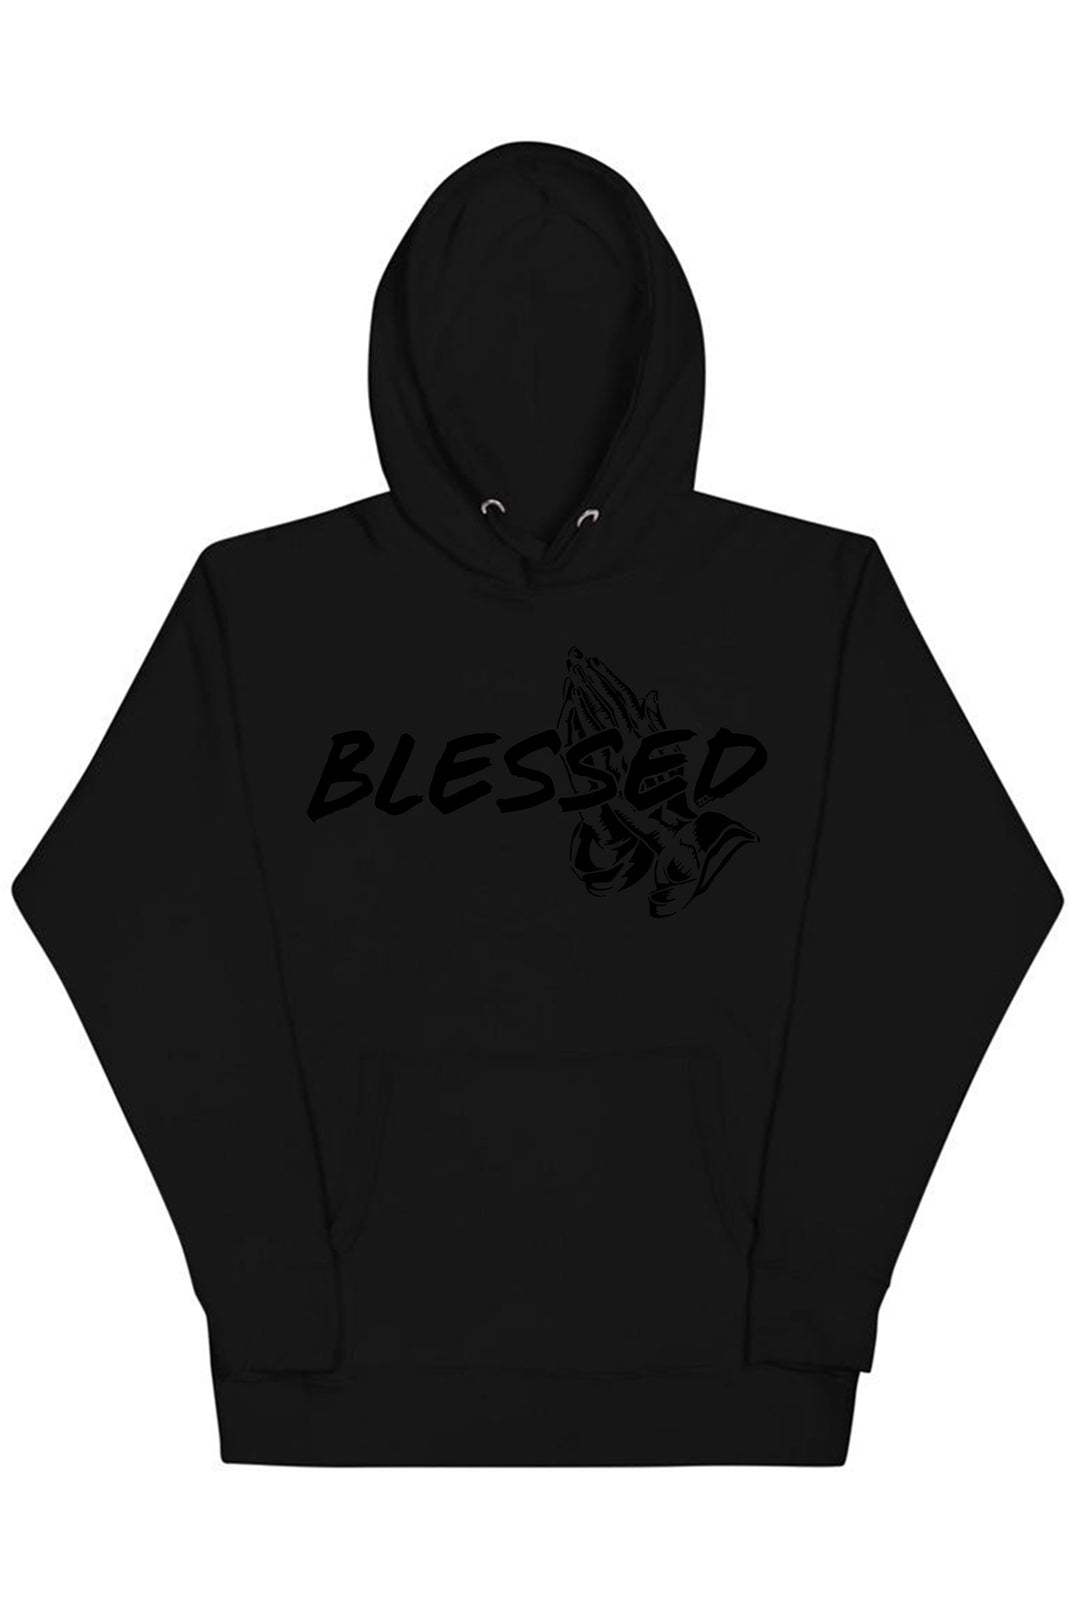 Blessed Hoodie (Black Logo) - Zamage